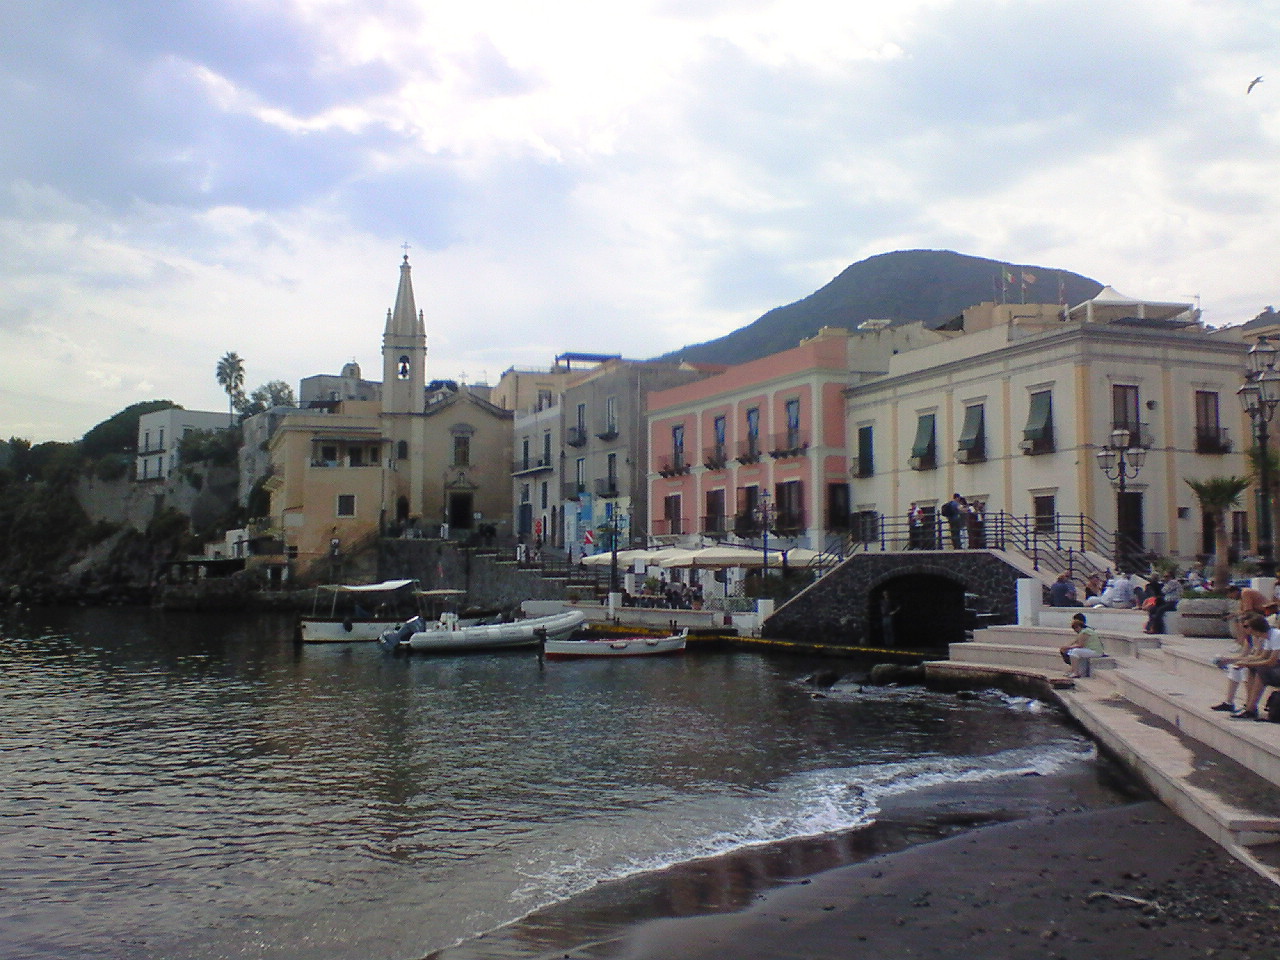 シチリア周遊 駆け足 観光 編 その3 美容のための エオリア諸島 Fermata On Line イタリア留学 欧州旅行記とか もろもろもろ